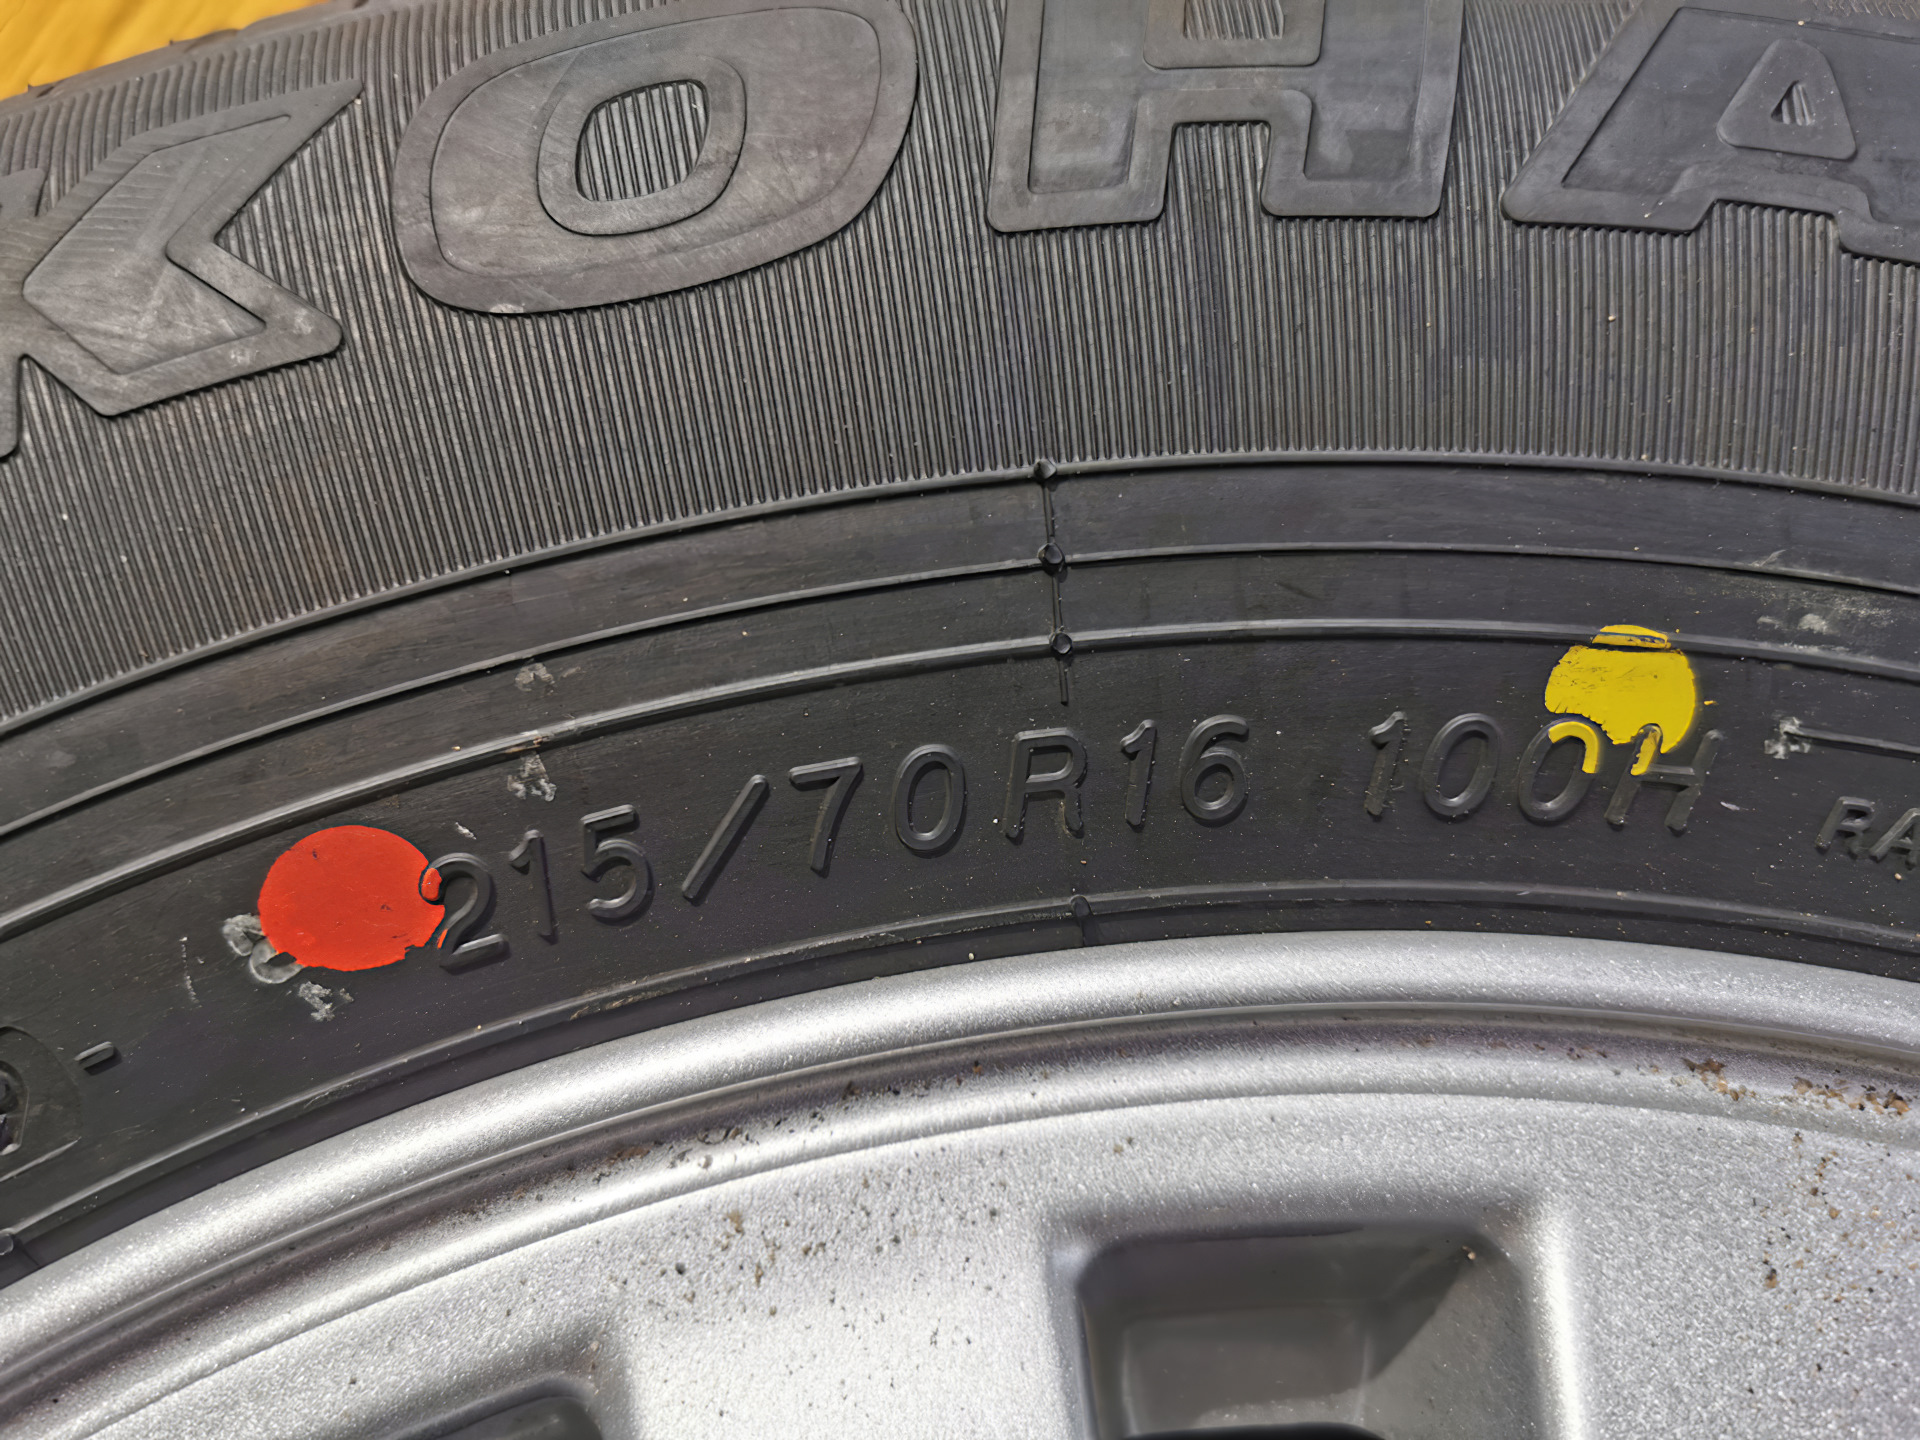 Цветные метки используемые для маркировки шины. Желтый и красный кружок на шине